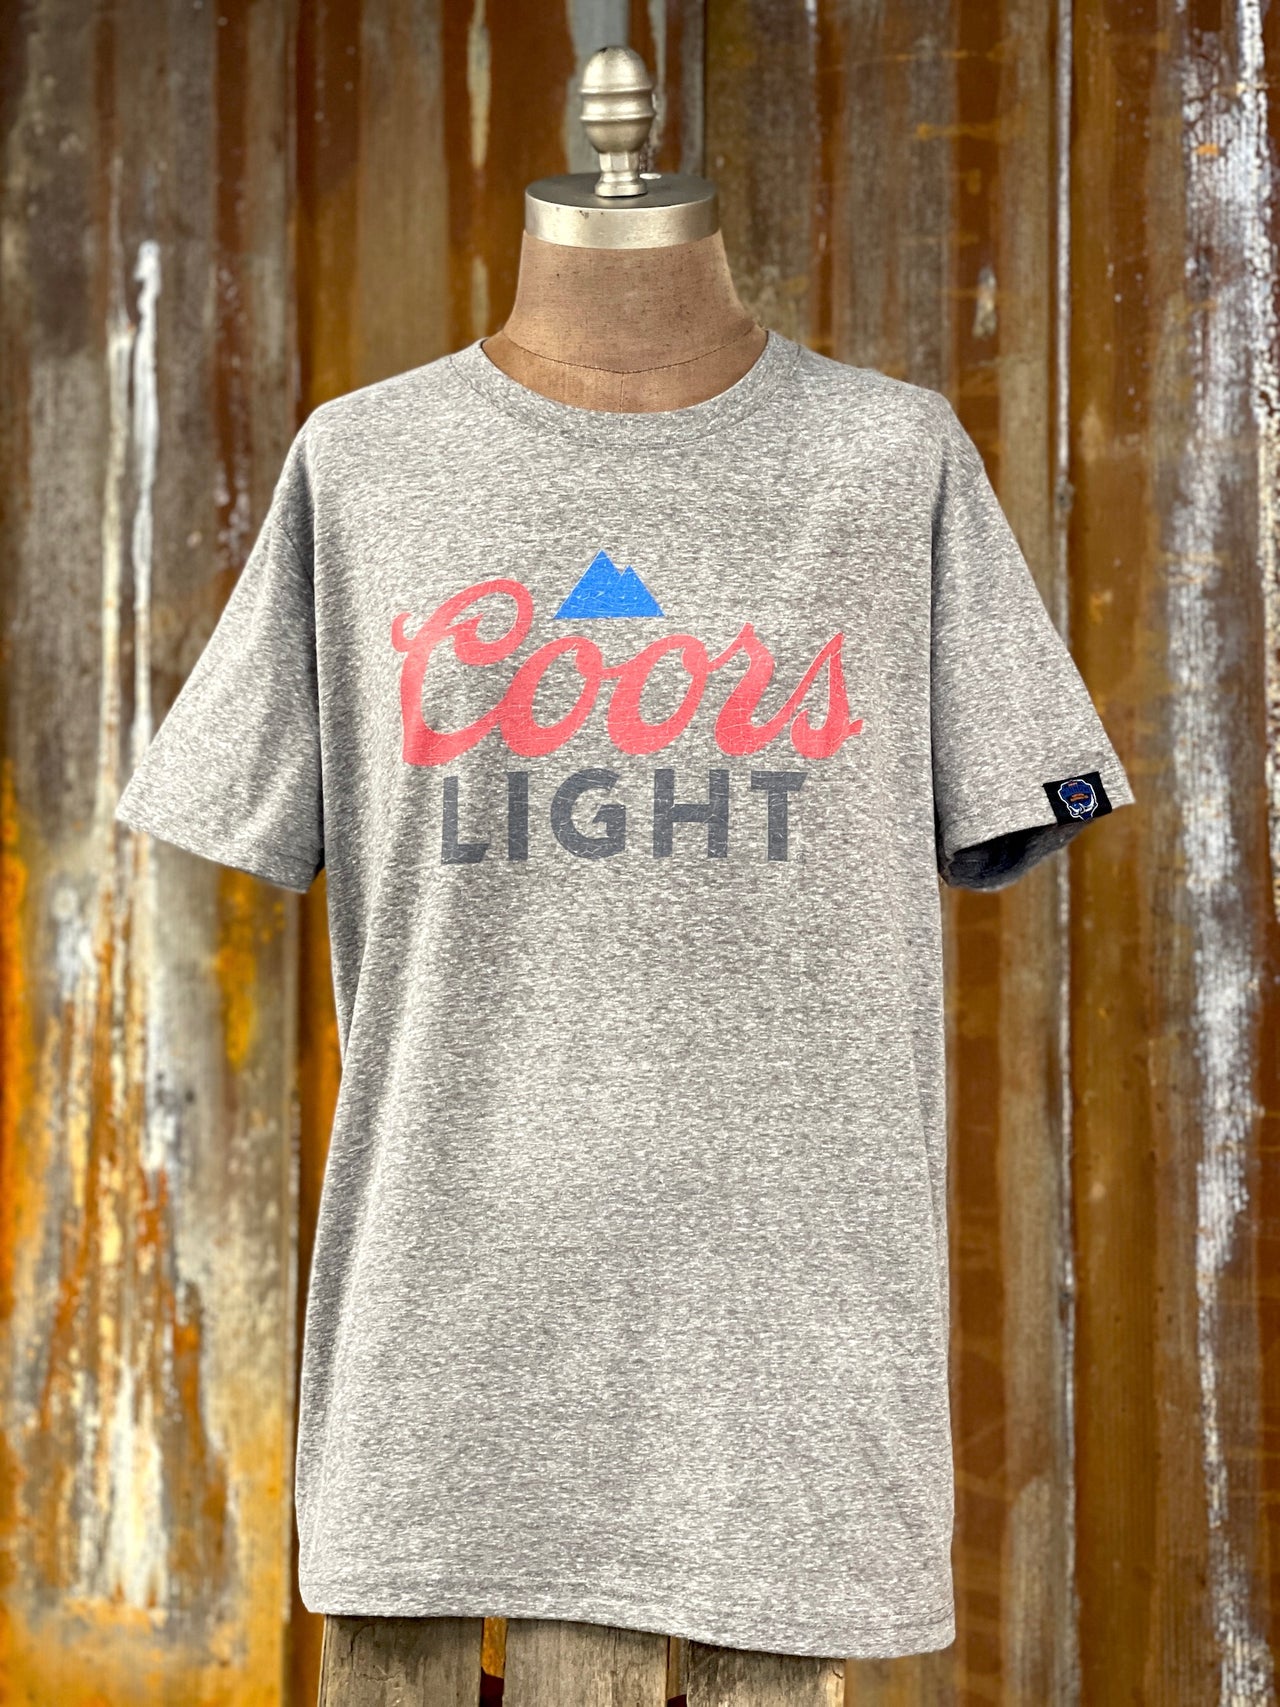 Coors Light T-shirt